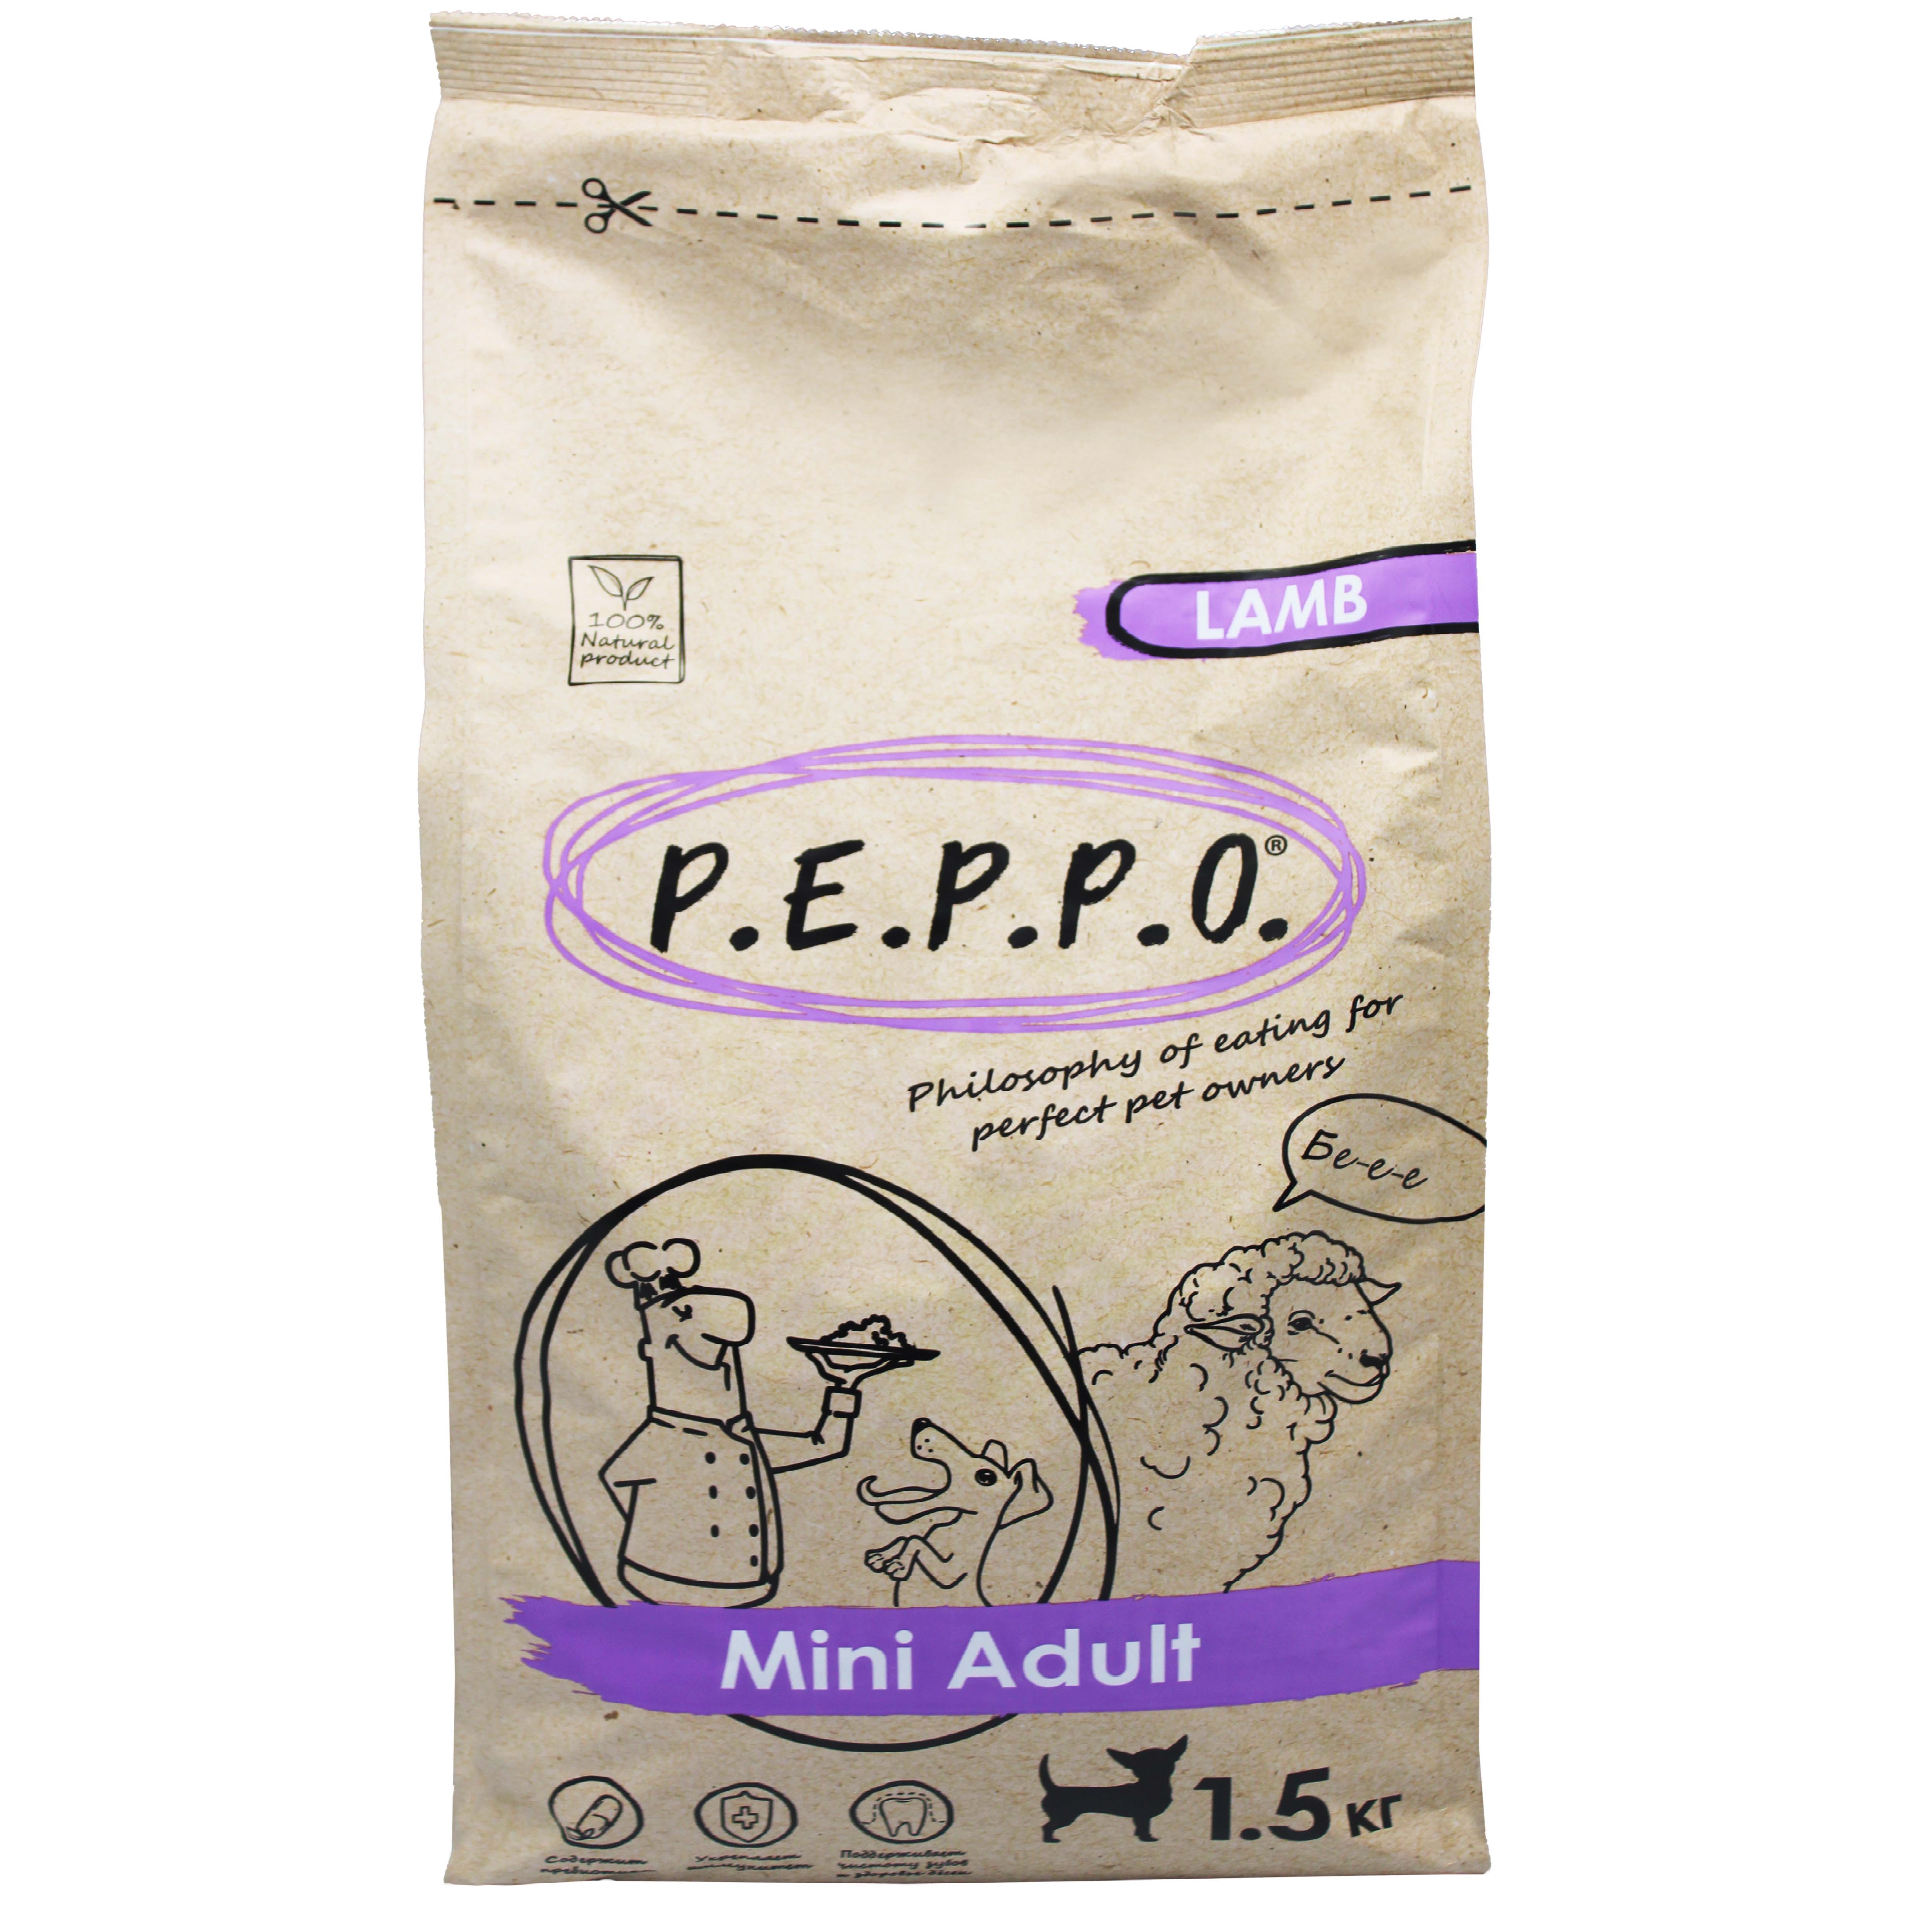 Сухой корм для собак PEPPO Mini Adult, для мини пород, ягненок, 1,5 кг